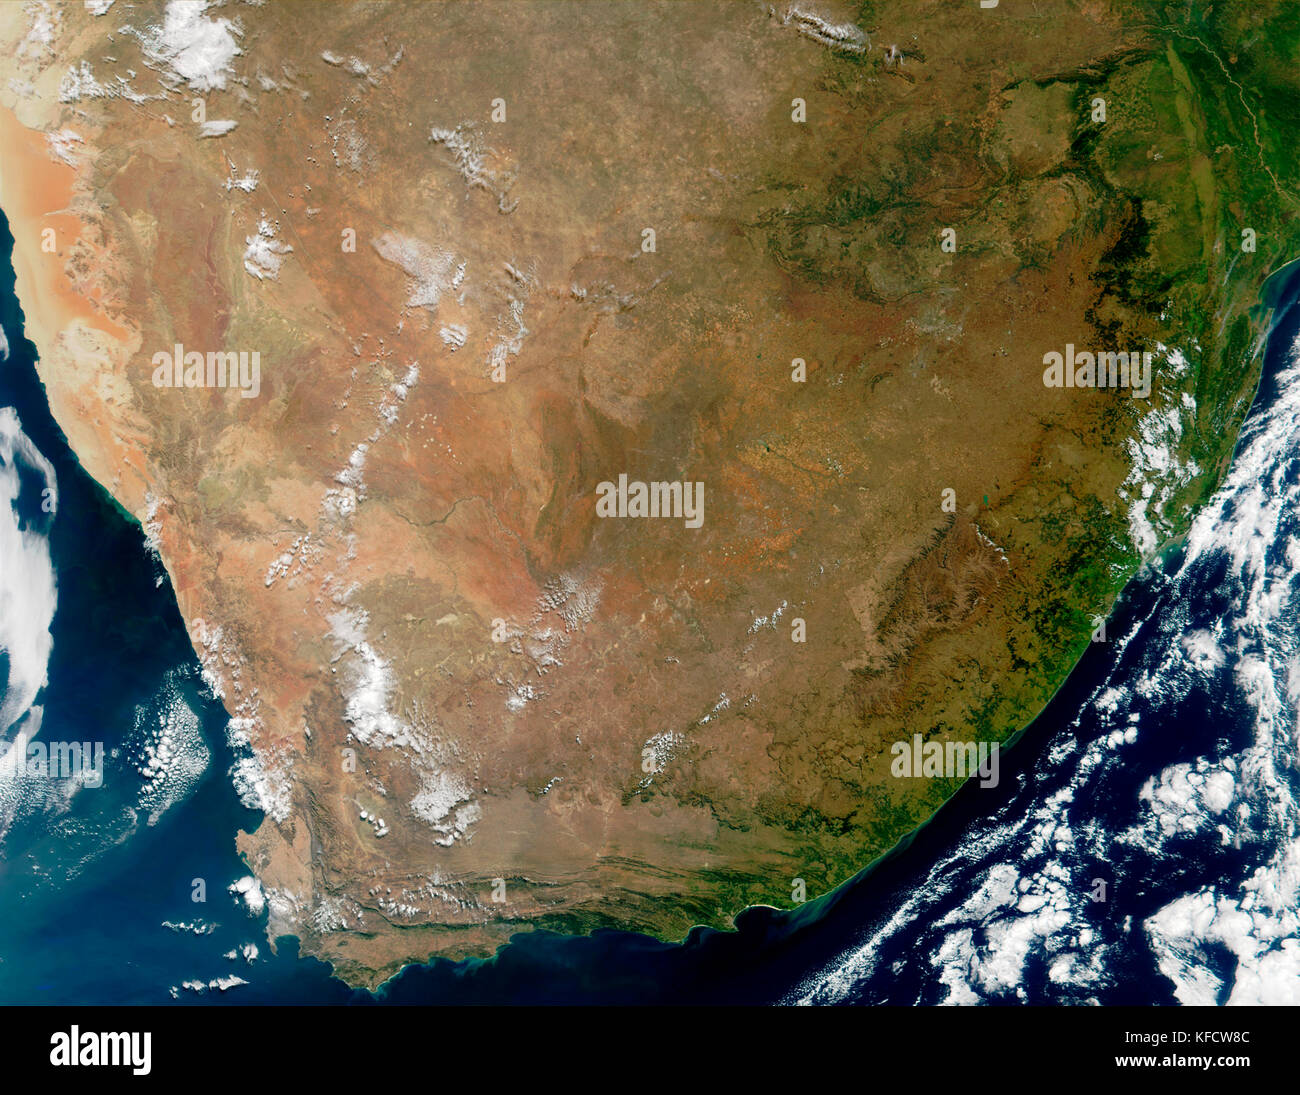 Sudáfrica. El área que se muestra en esta imagen abarca siete ciudades capitales y una serie de características geológicas distintivas de la región. Foto de stock